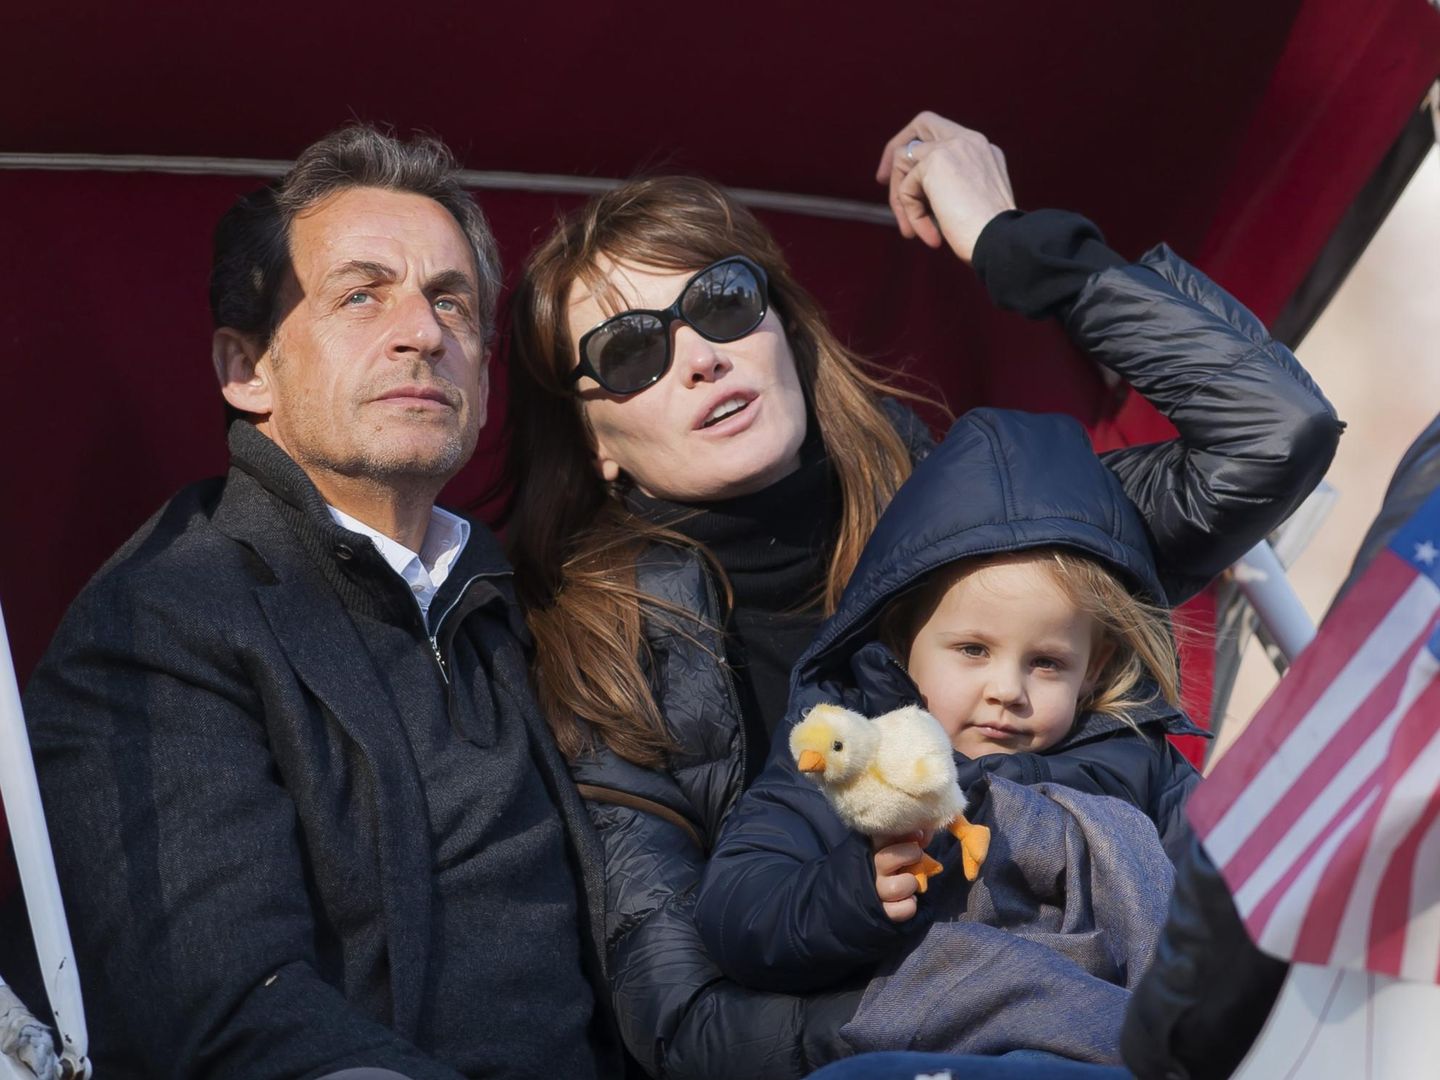 El matrimonio Bruni-Sarkozy, junto a su hija Giulia en un viaje a Nueva York (Cordon Press)